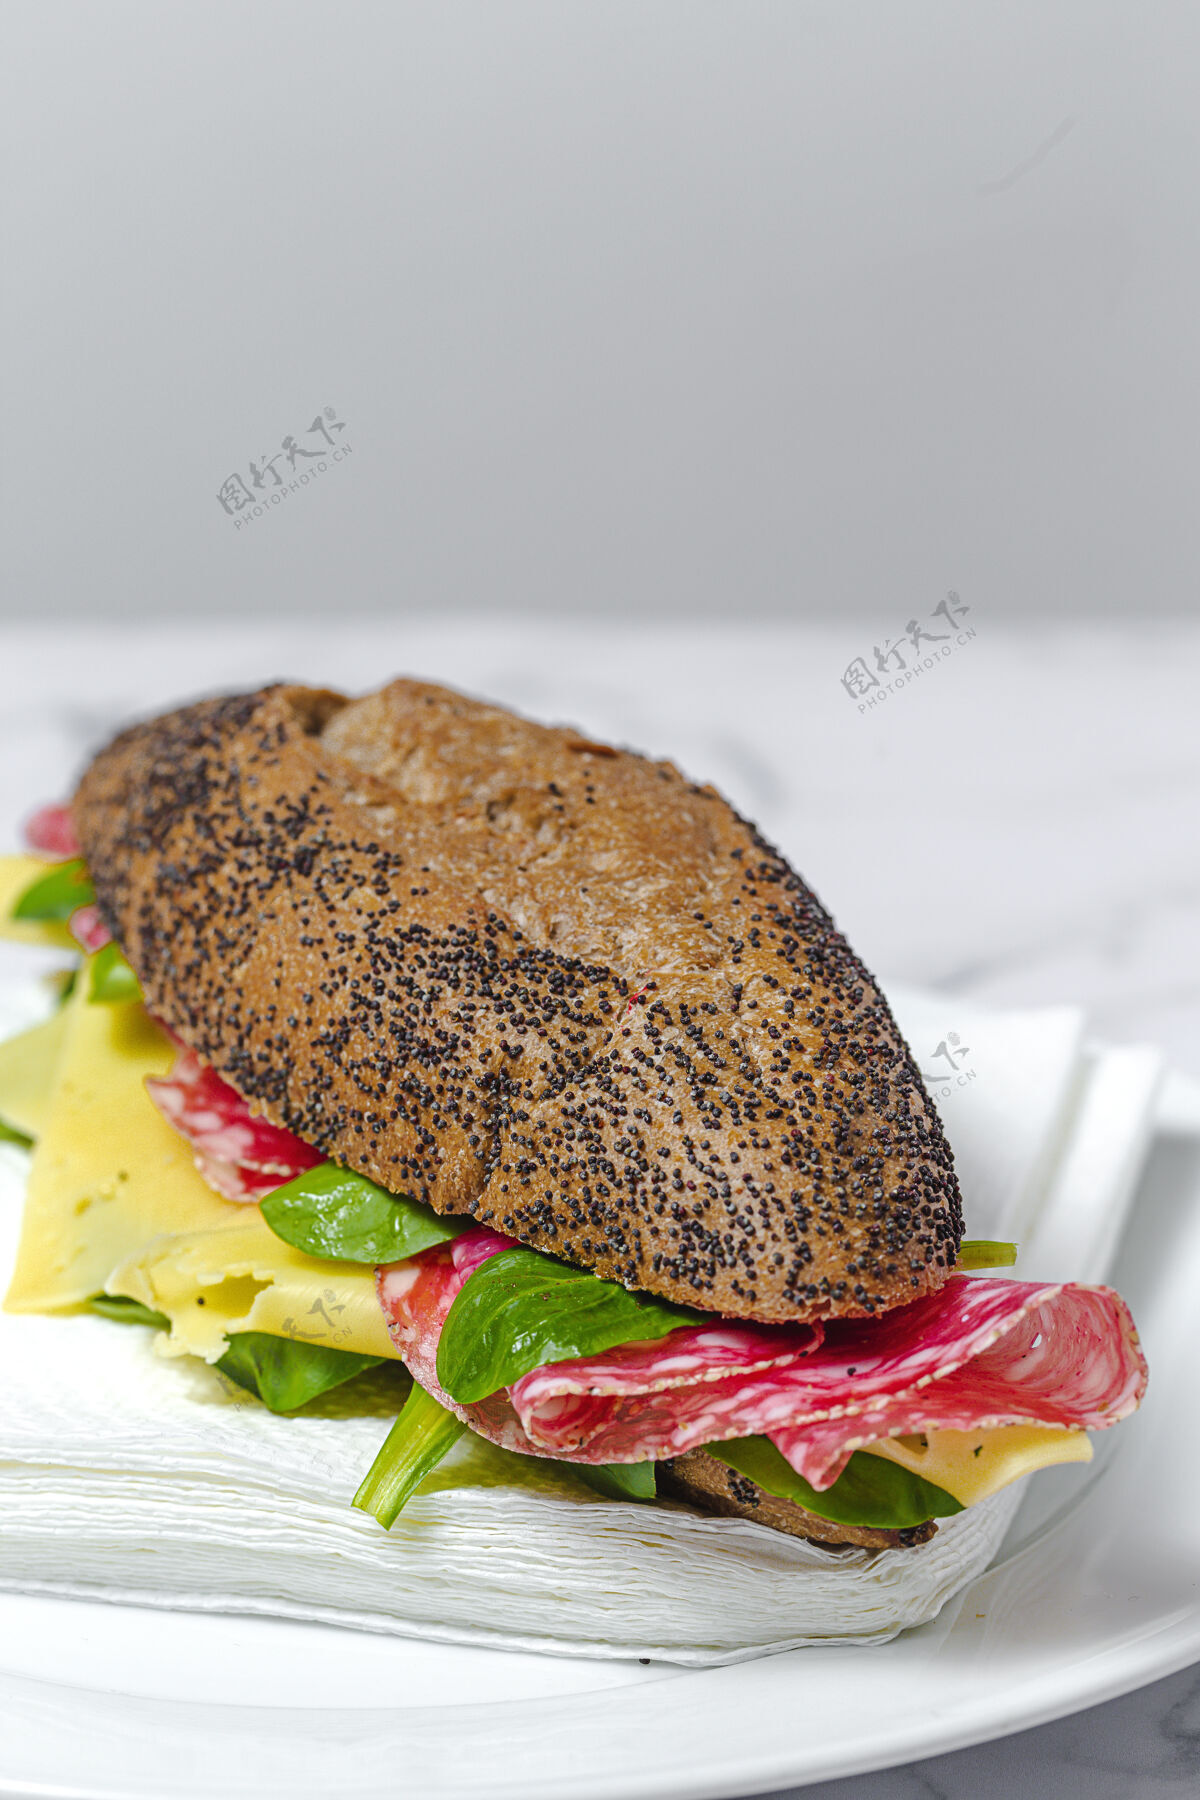 快餐自制香肠三明治配生菜和芝士 配种子面包带走送食物无名小卒肉法式面包